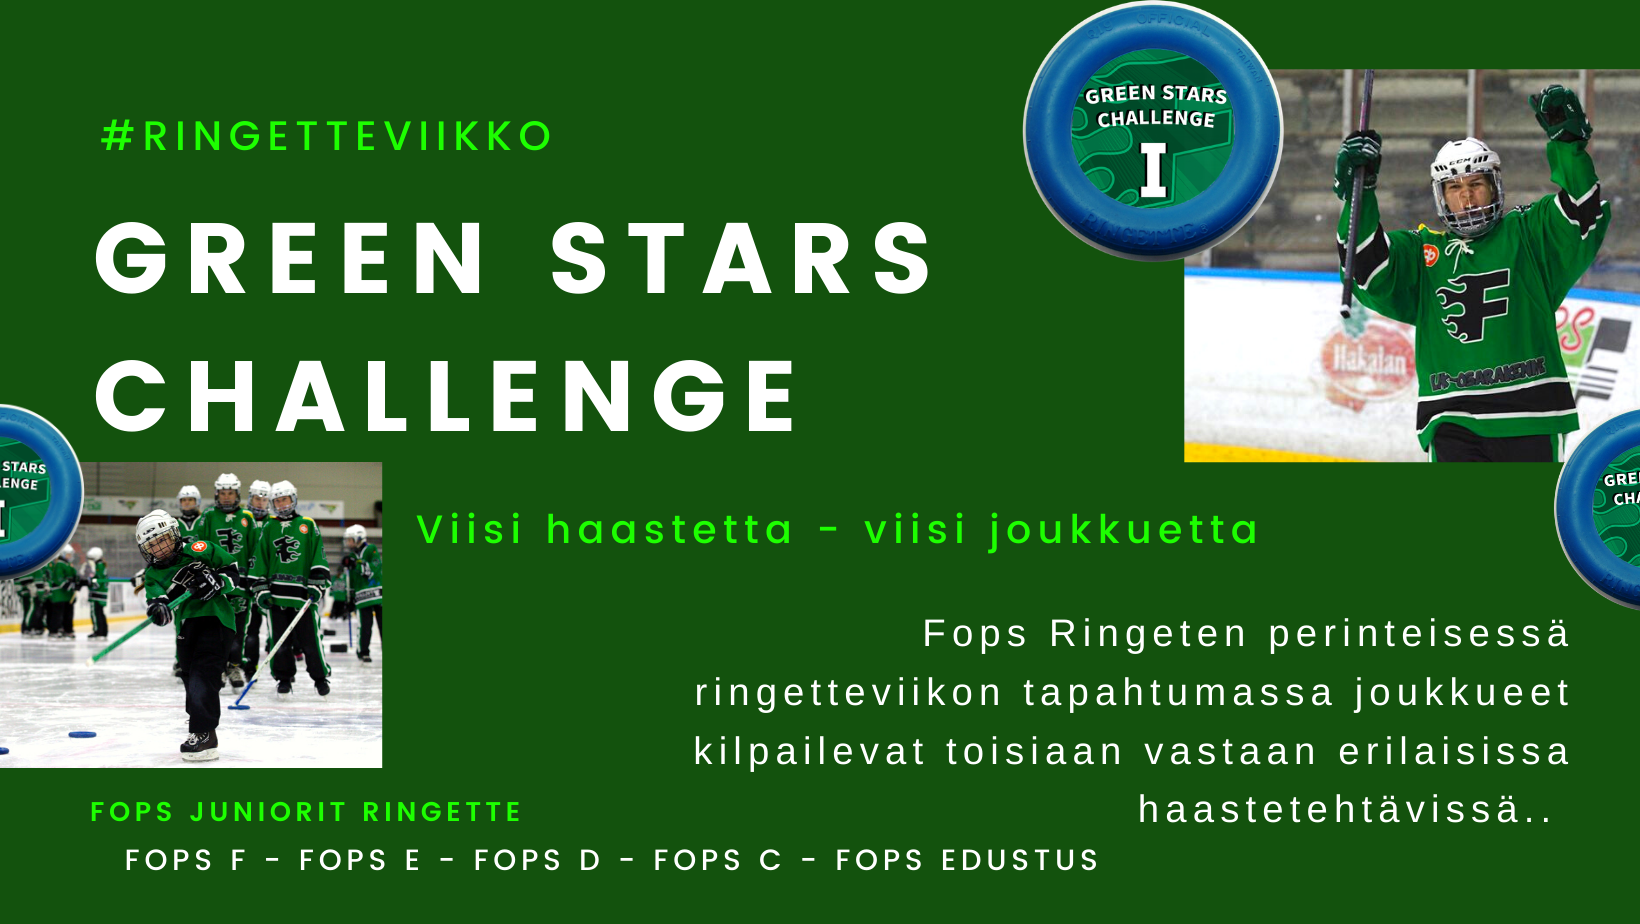 Green Stars challenge - Fops ringeten päätapahtuma